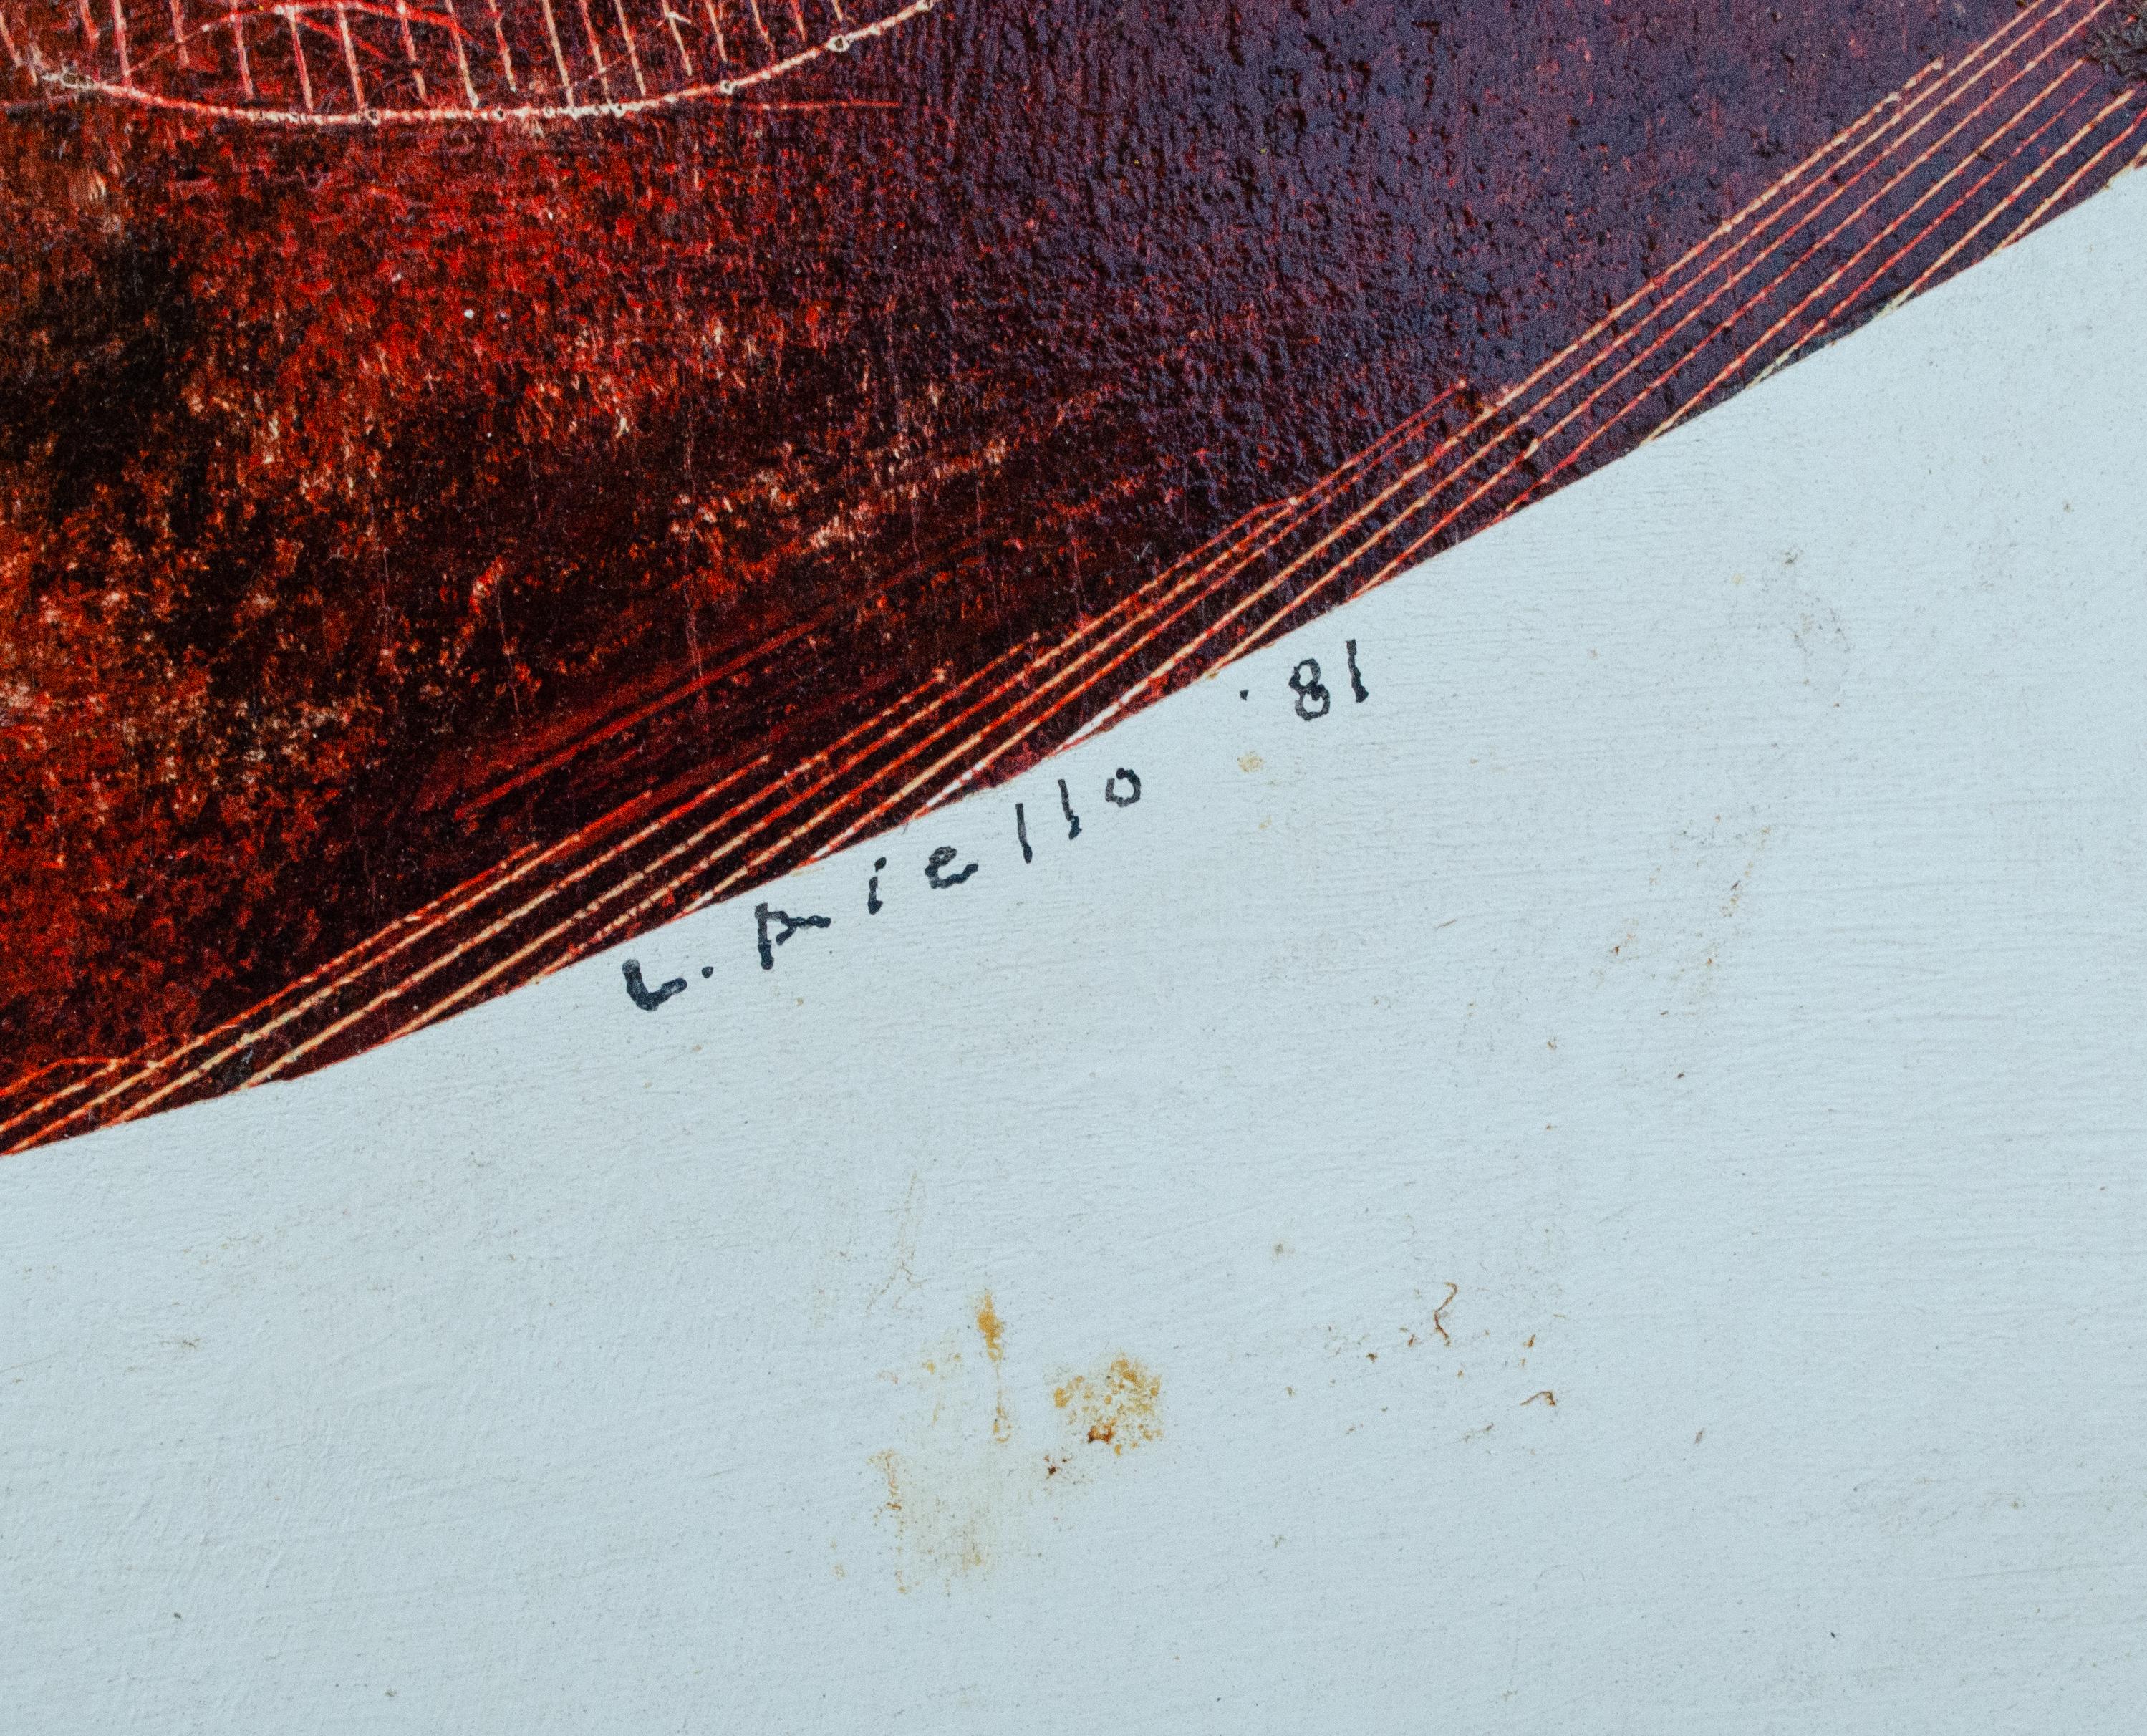 L. Arello
Sans titre, 1981
Technique mixte sur bois
27 1/2 x 28 7/8 x 1 3/8 in. 
Signé en bas à droite : I.L.A. 1981
